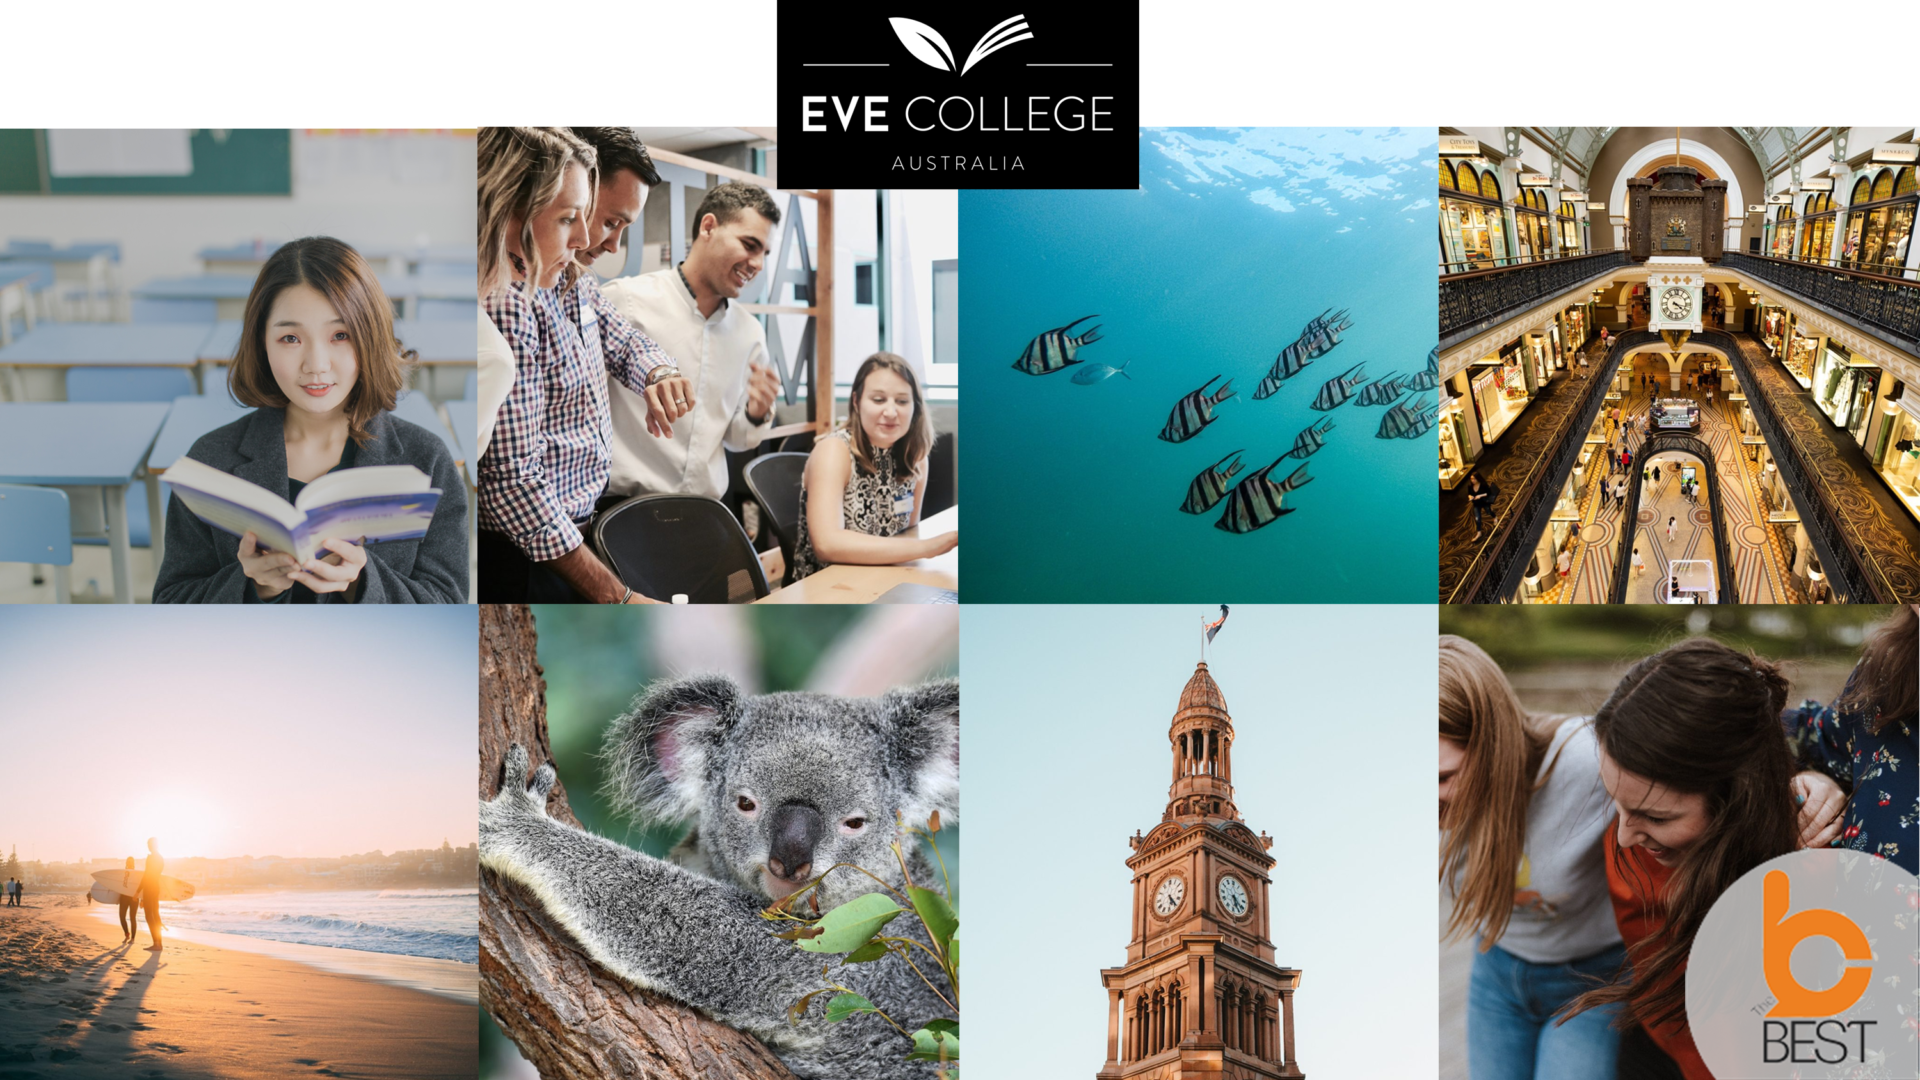 เรียนต่อออสเตรเลีย EVE College เรียนต่อต่างประเทศ